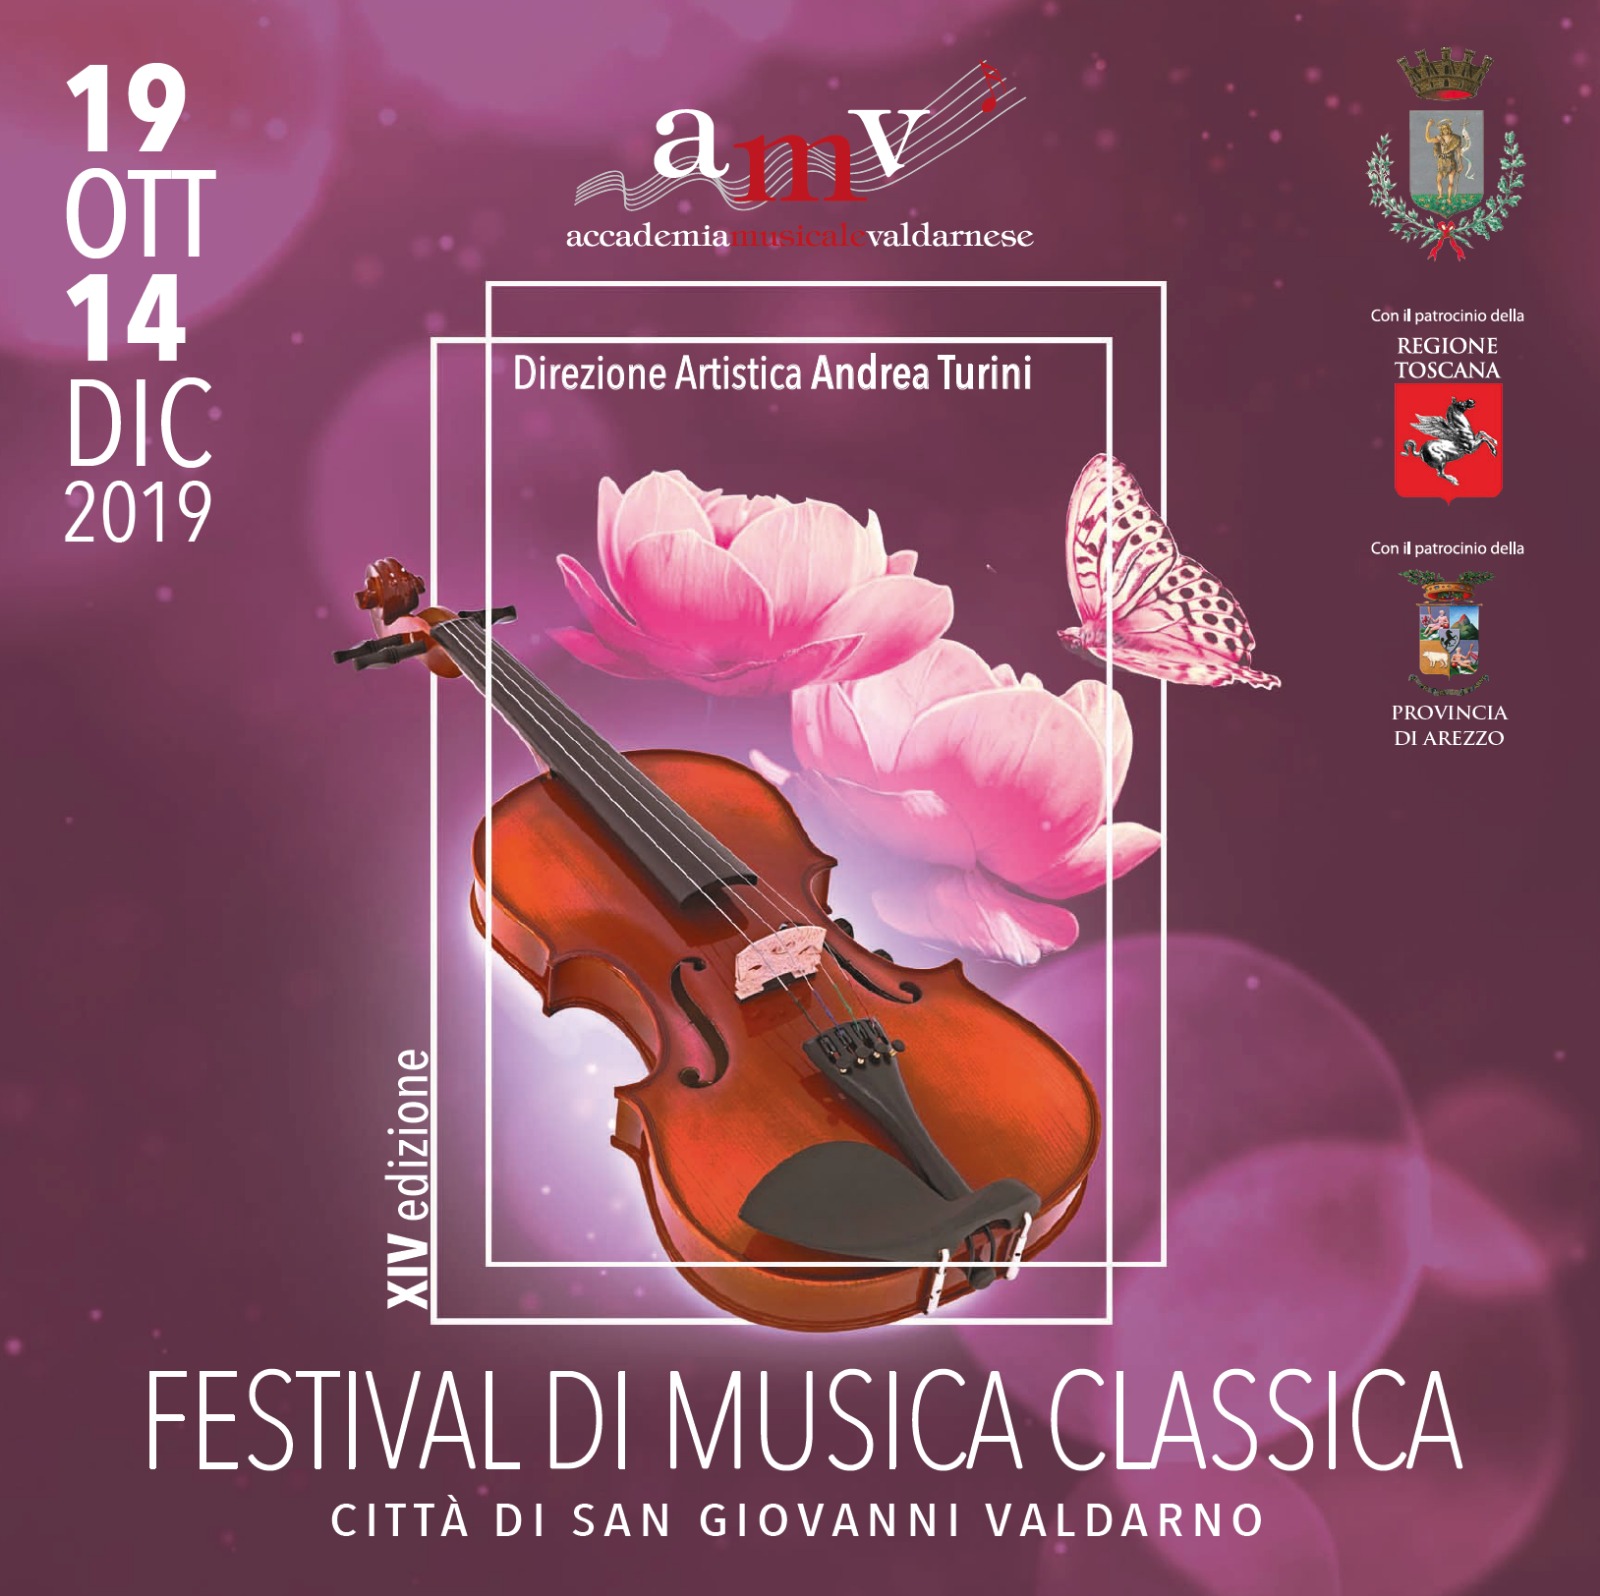 Festival di Musica Classica “Città di San Giovanni Valdarno” – XIV Edizione